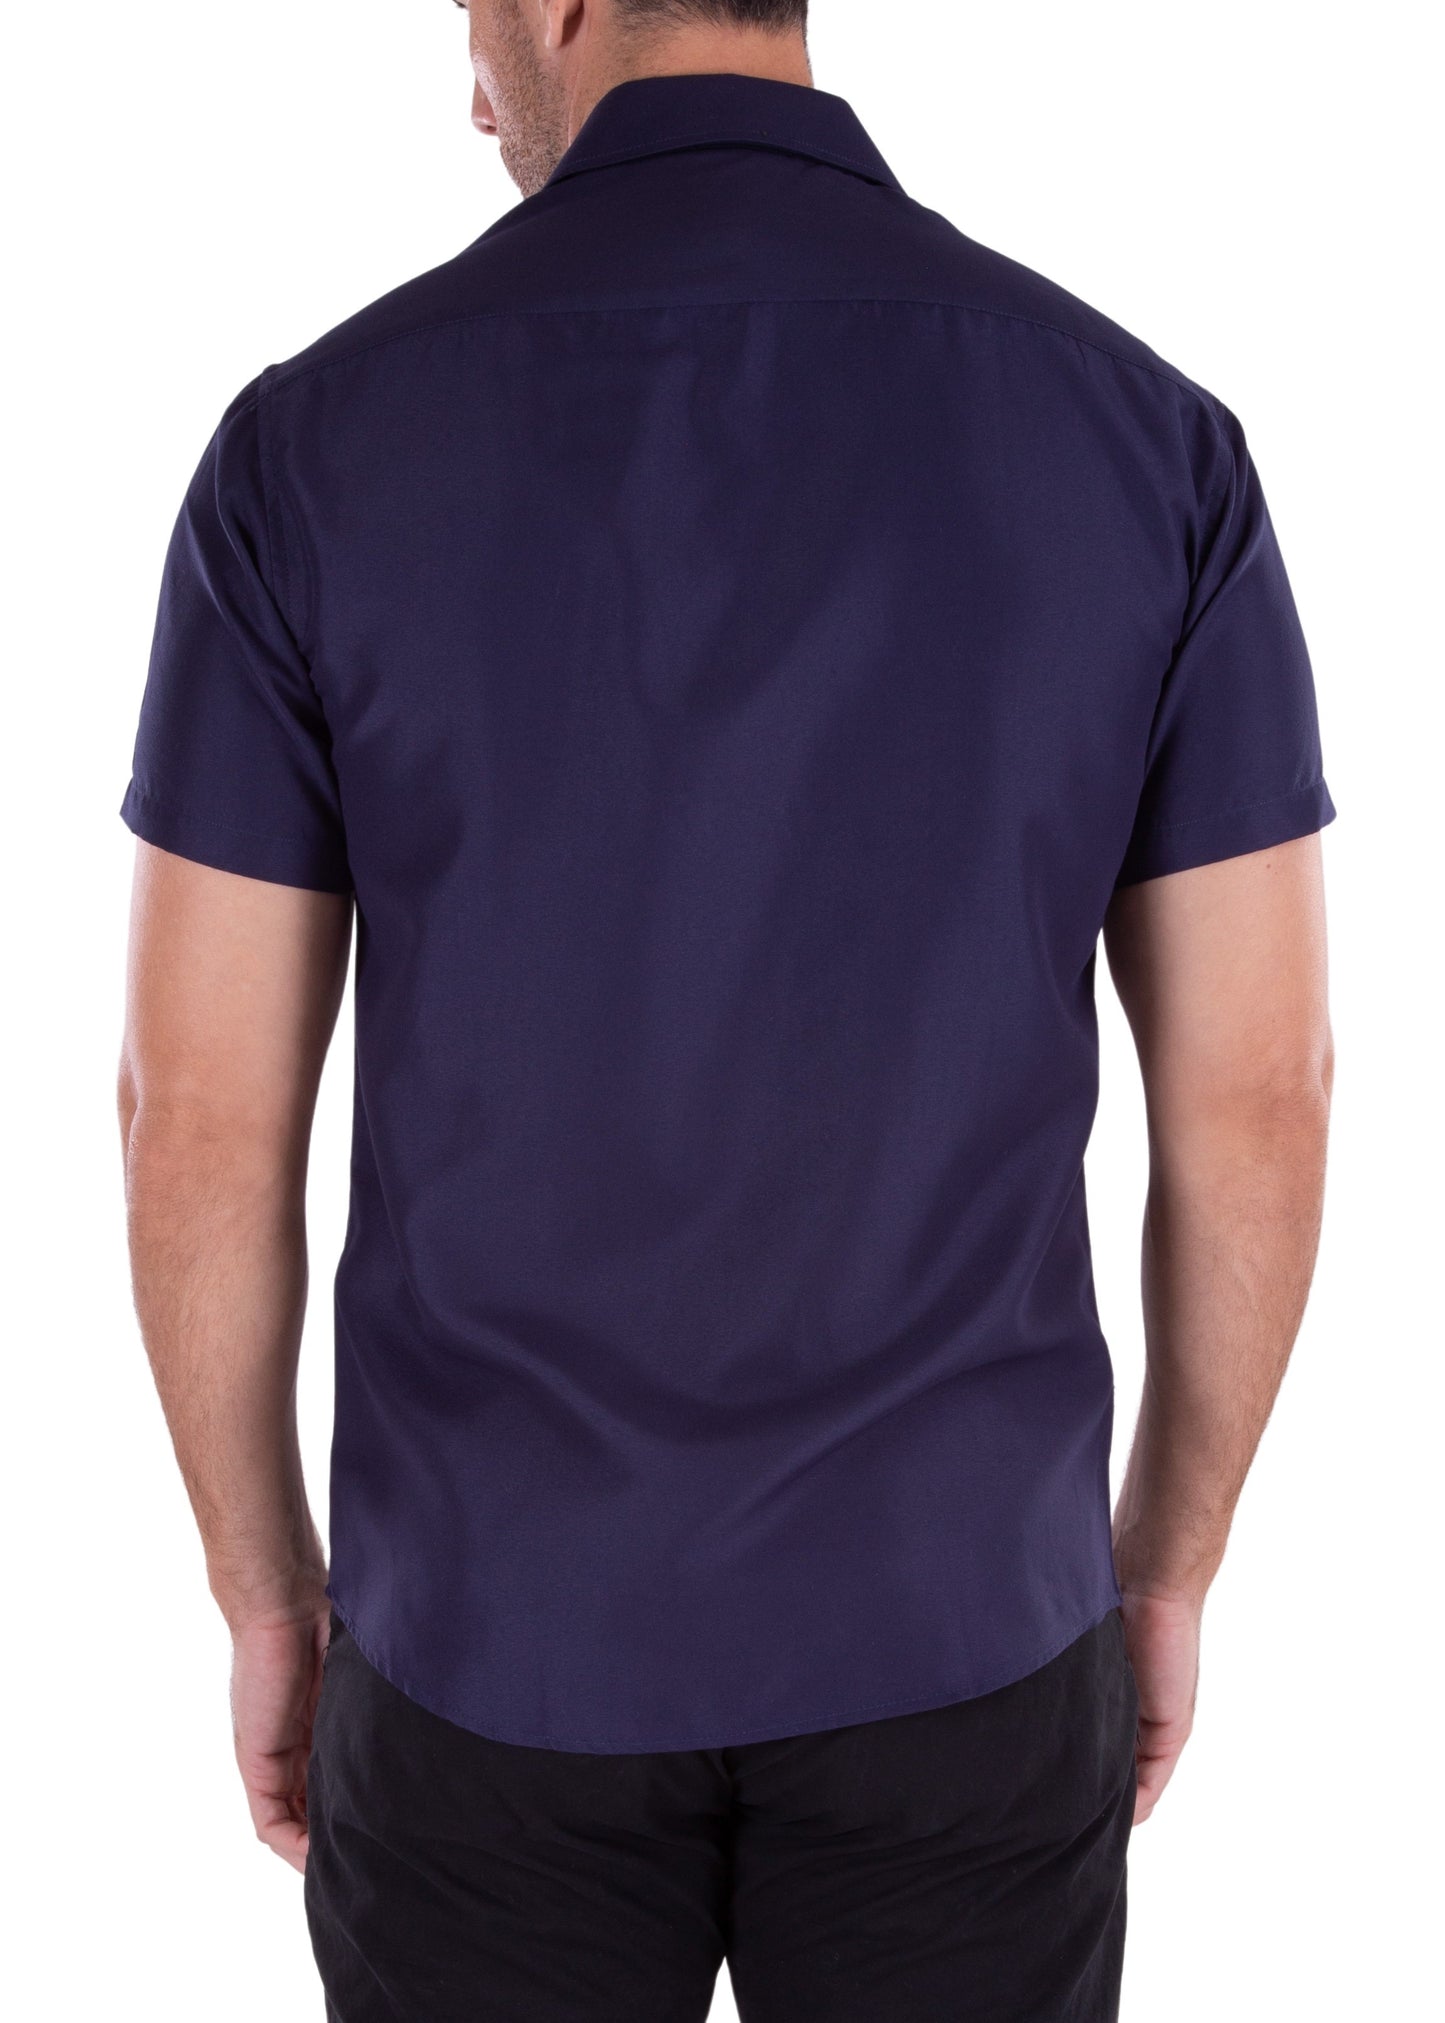 'The Standard' Short Sleeve Shirt